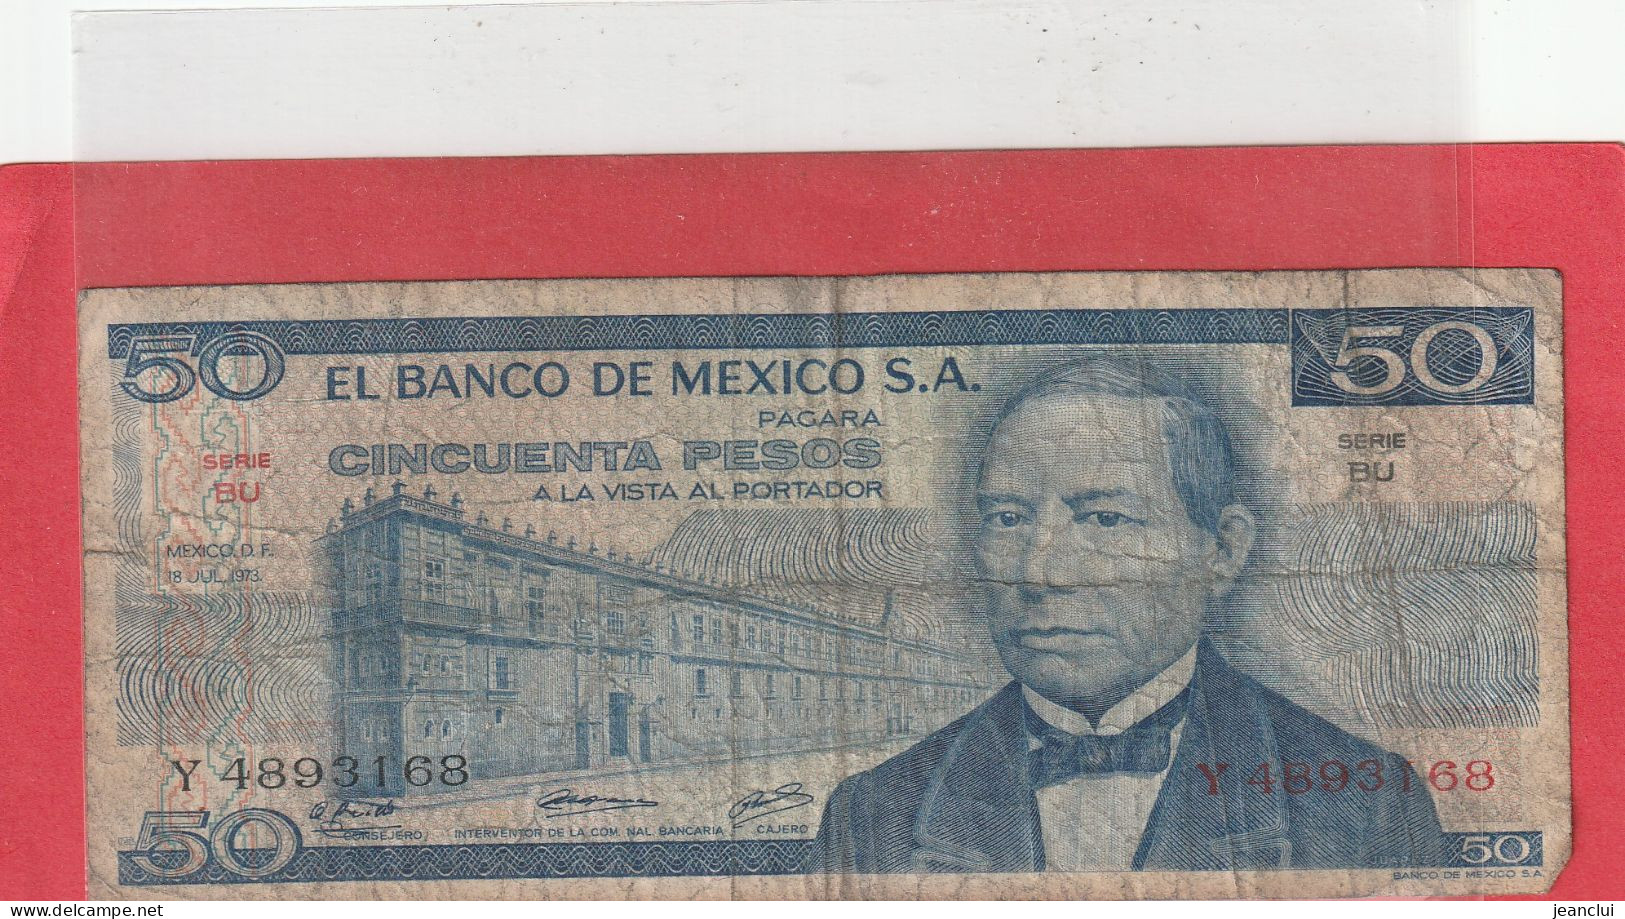 EL BANCO DE MEXICO S.A.  .  50 PESOS  .  18-7-1973  .  N°   Y 4893168 .  2 SCANNES  .  BILLET TRES USITE - Mexique